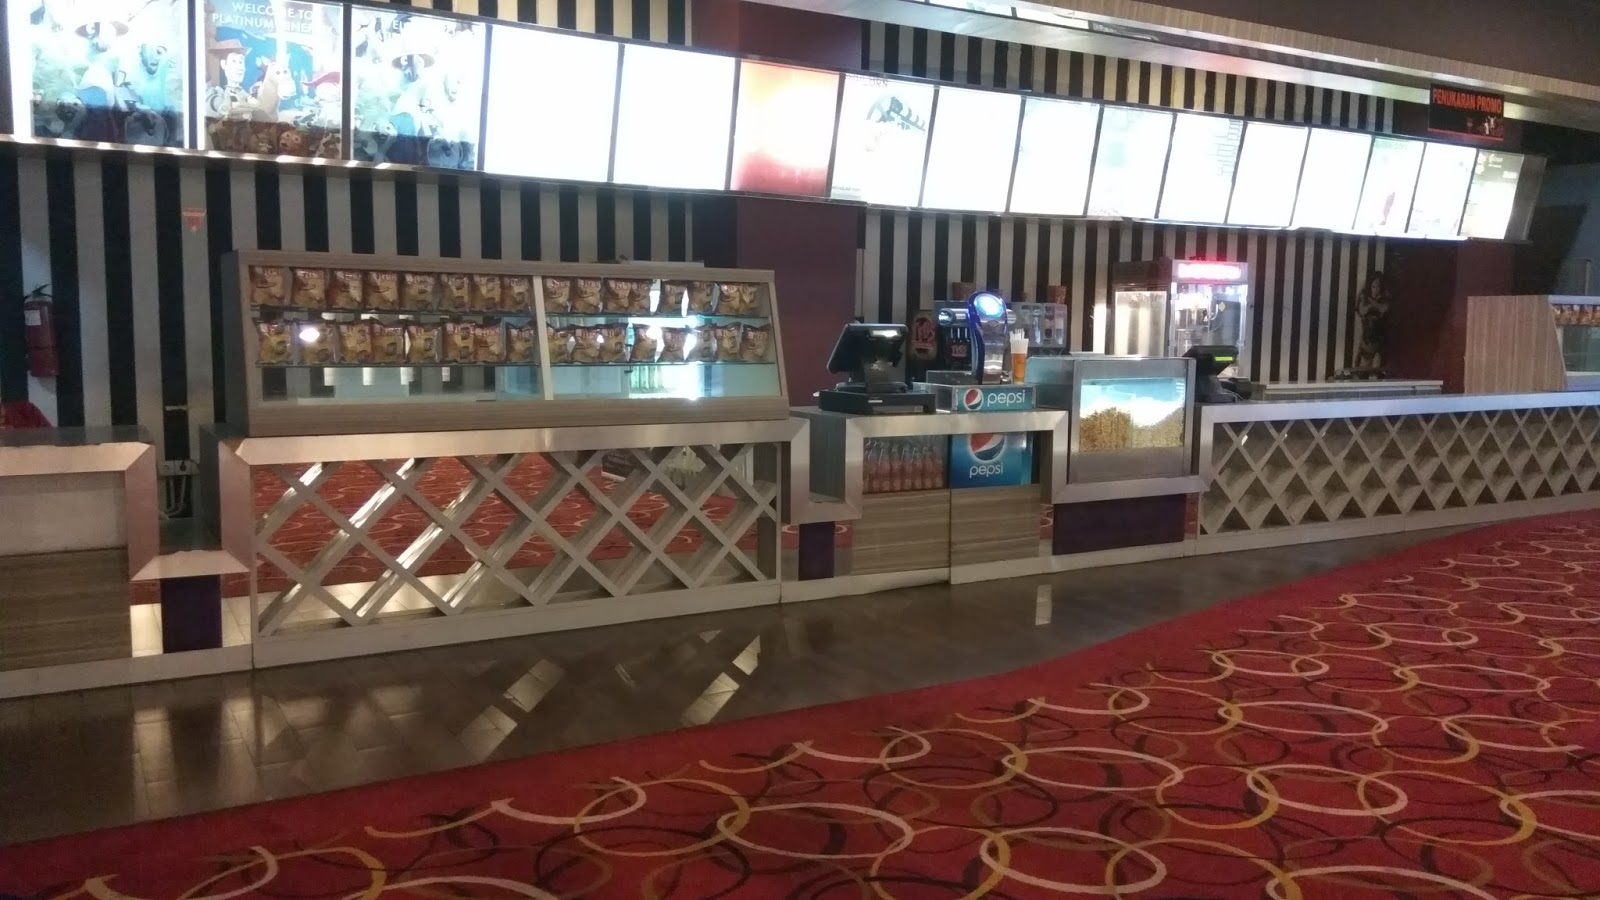 Harga tiket bioskop cibinong city mall